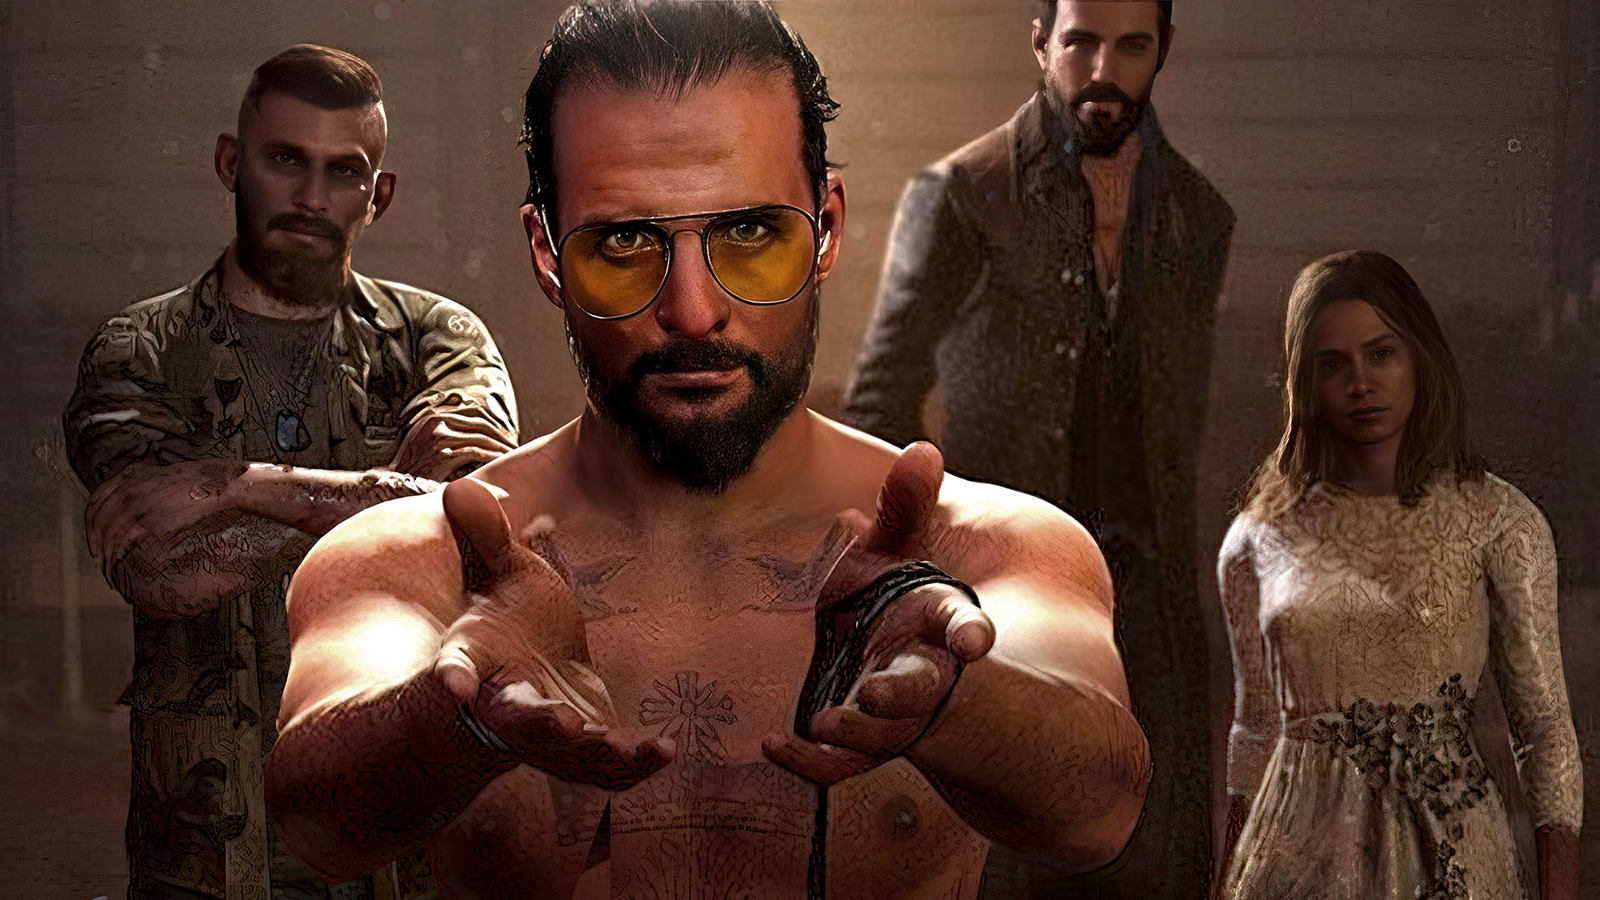 Far Cry 5 ganha atualização para PS5 e Xbox Series X/S